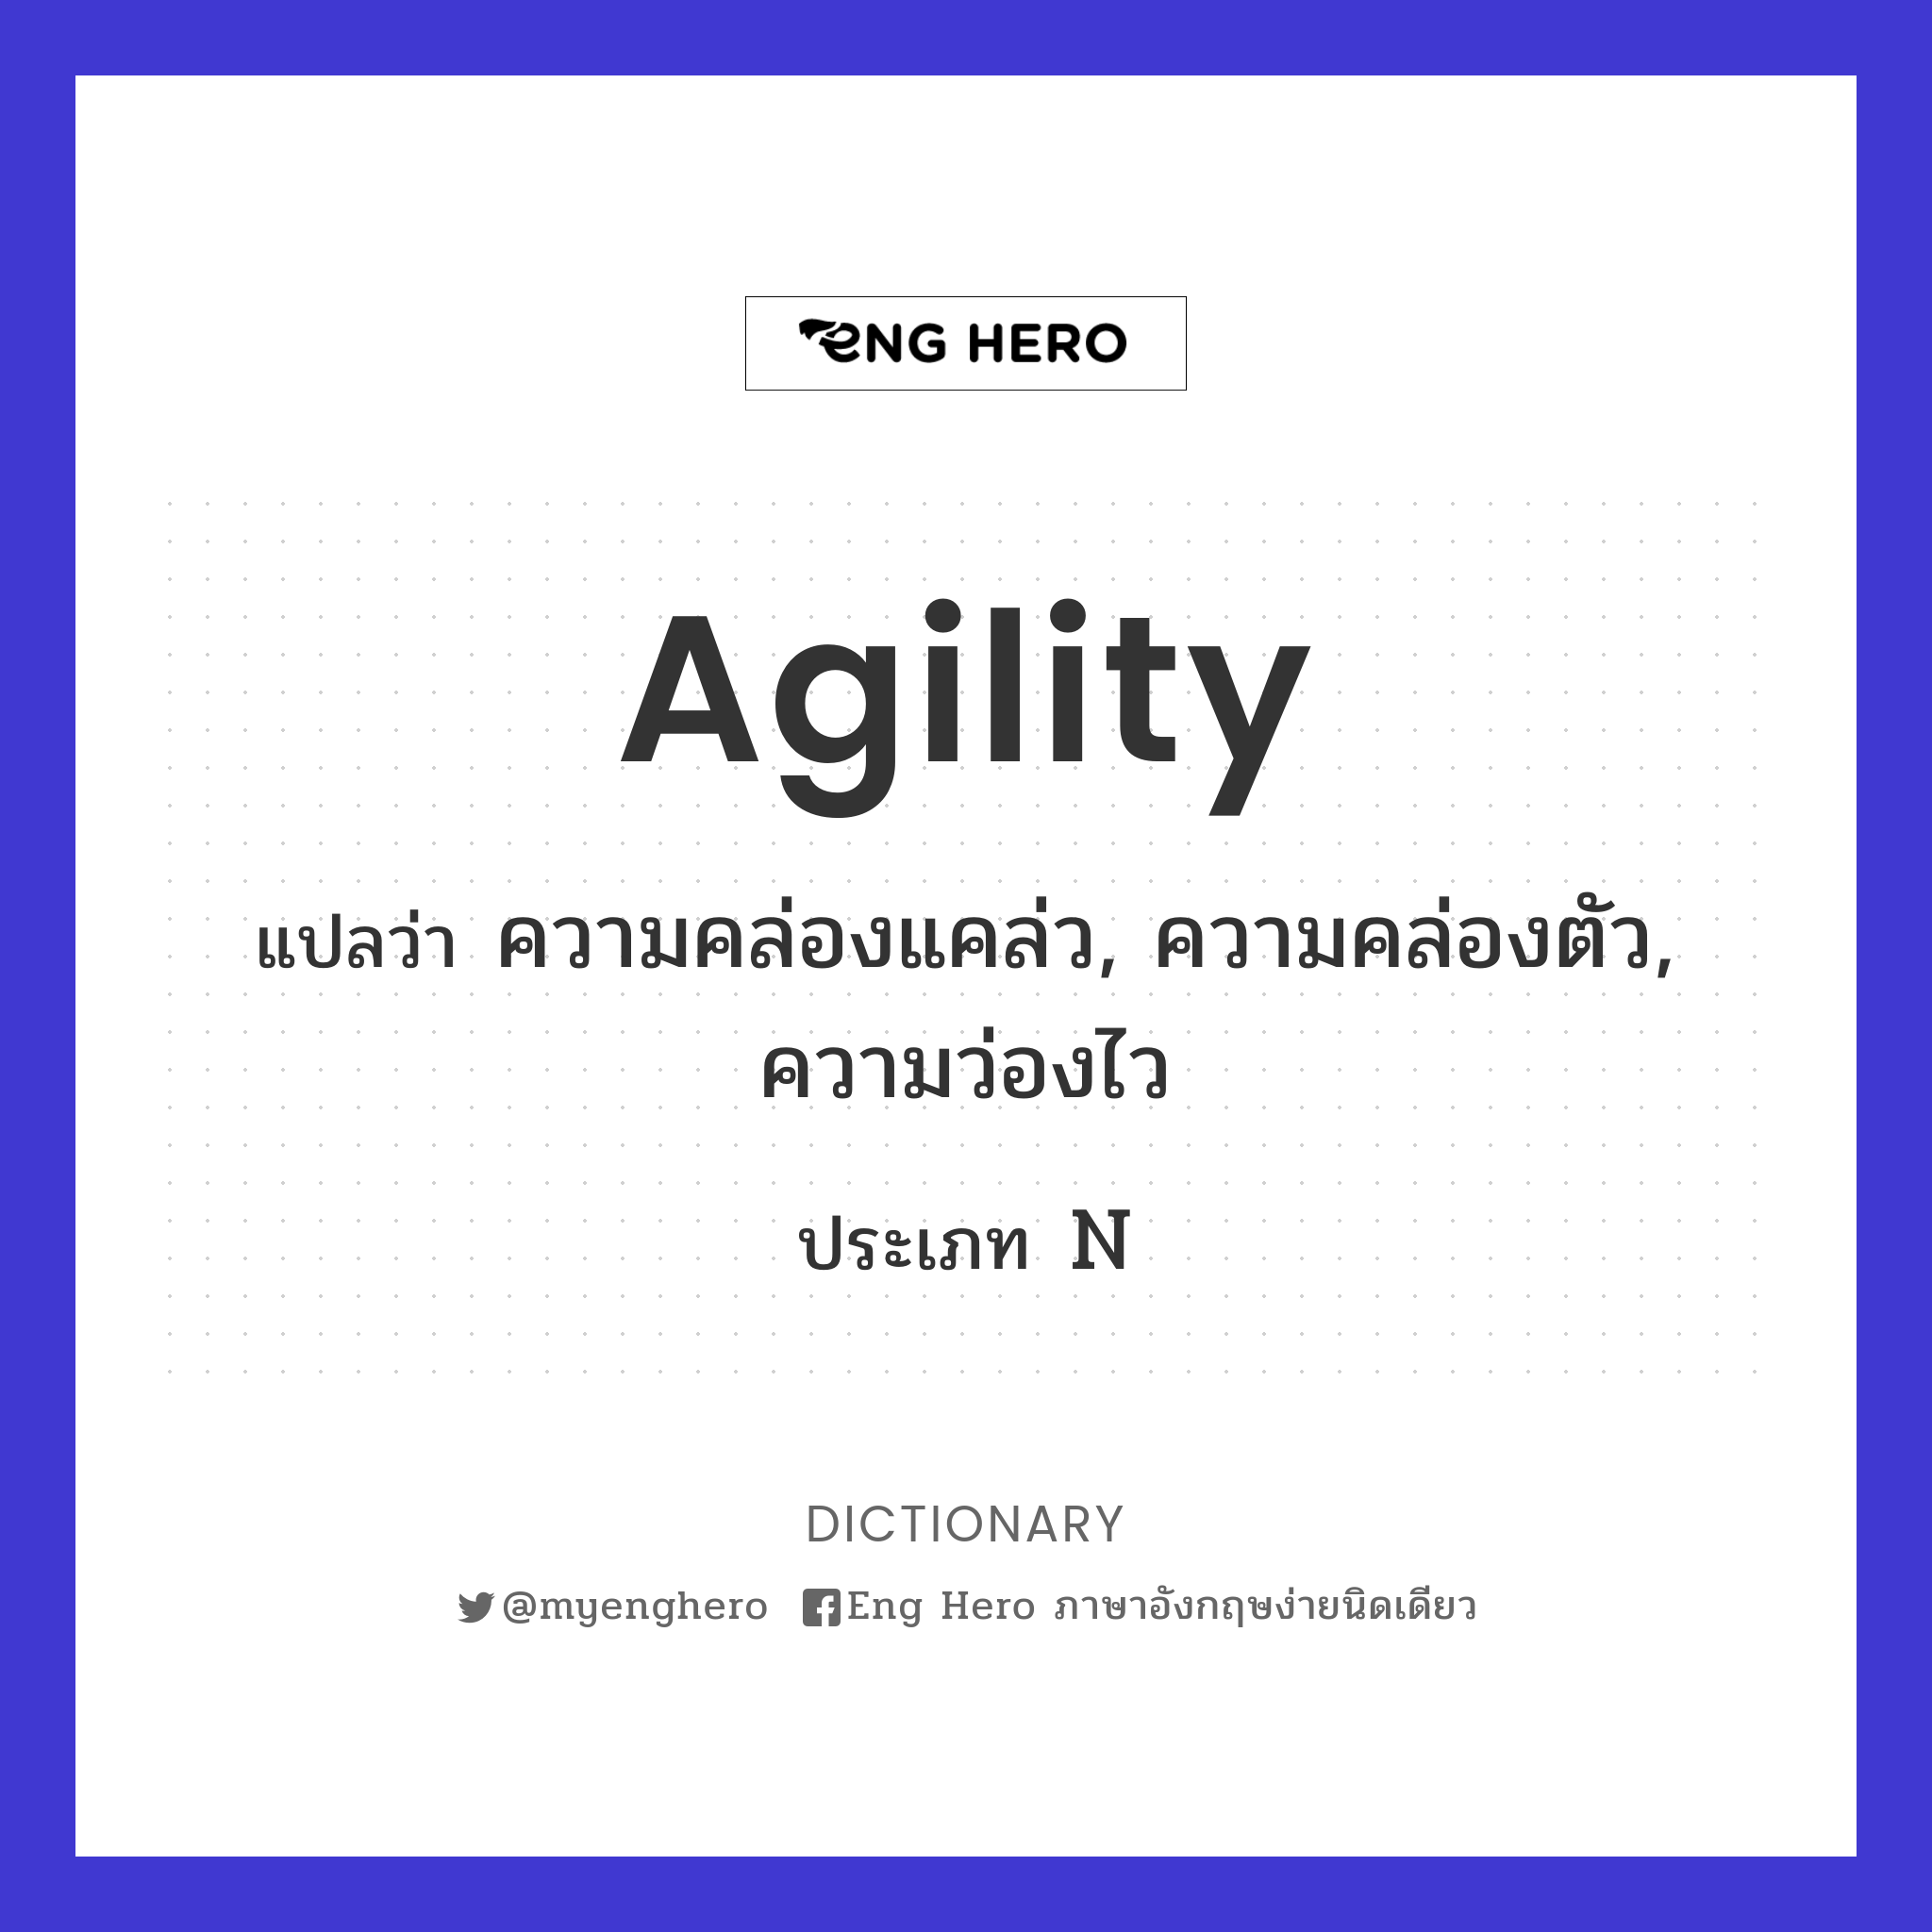 agility